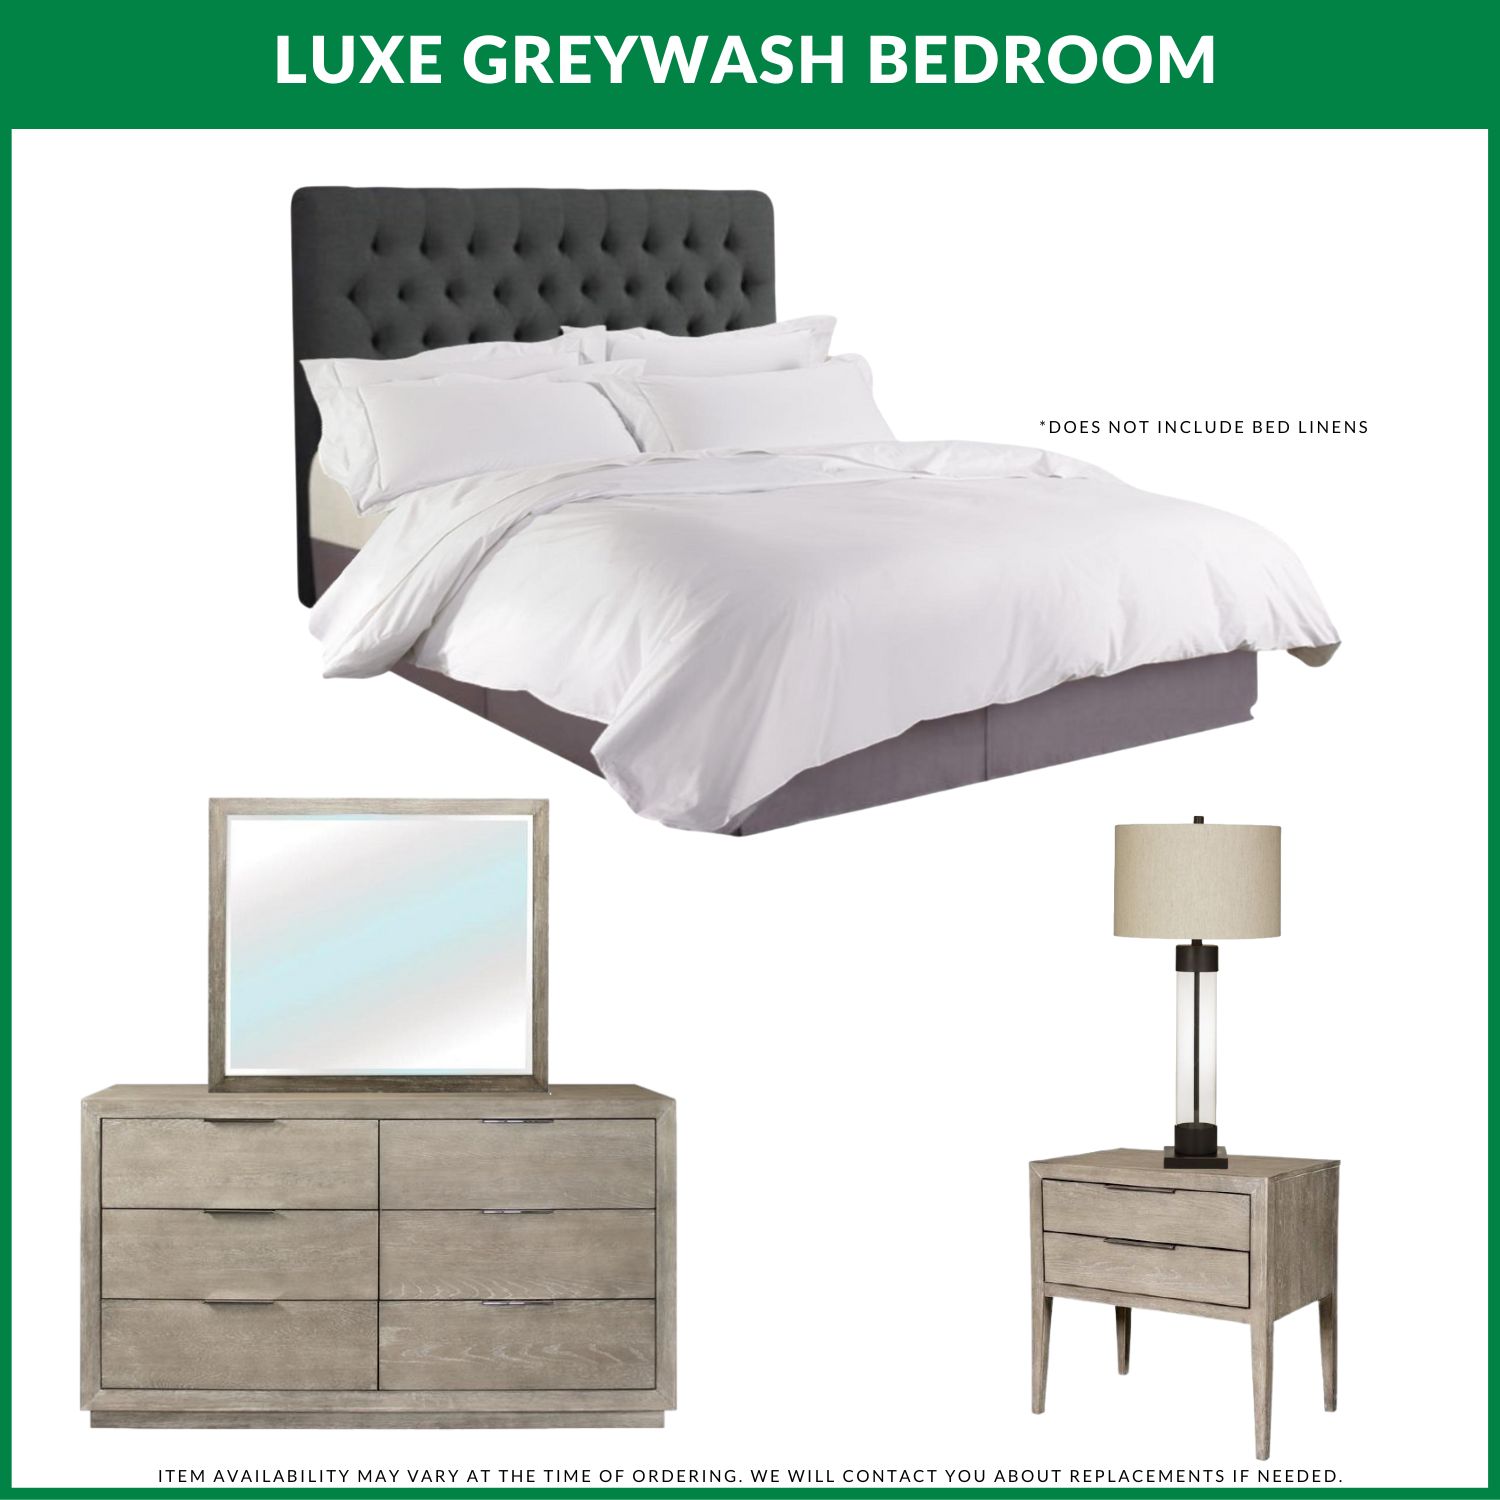 Luxe Greywash Bedroom